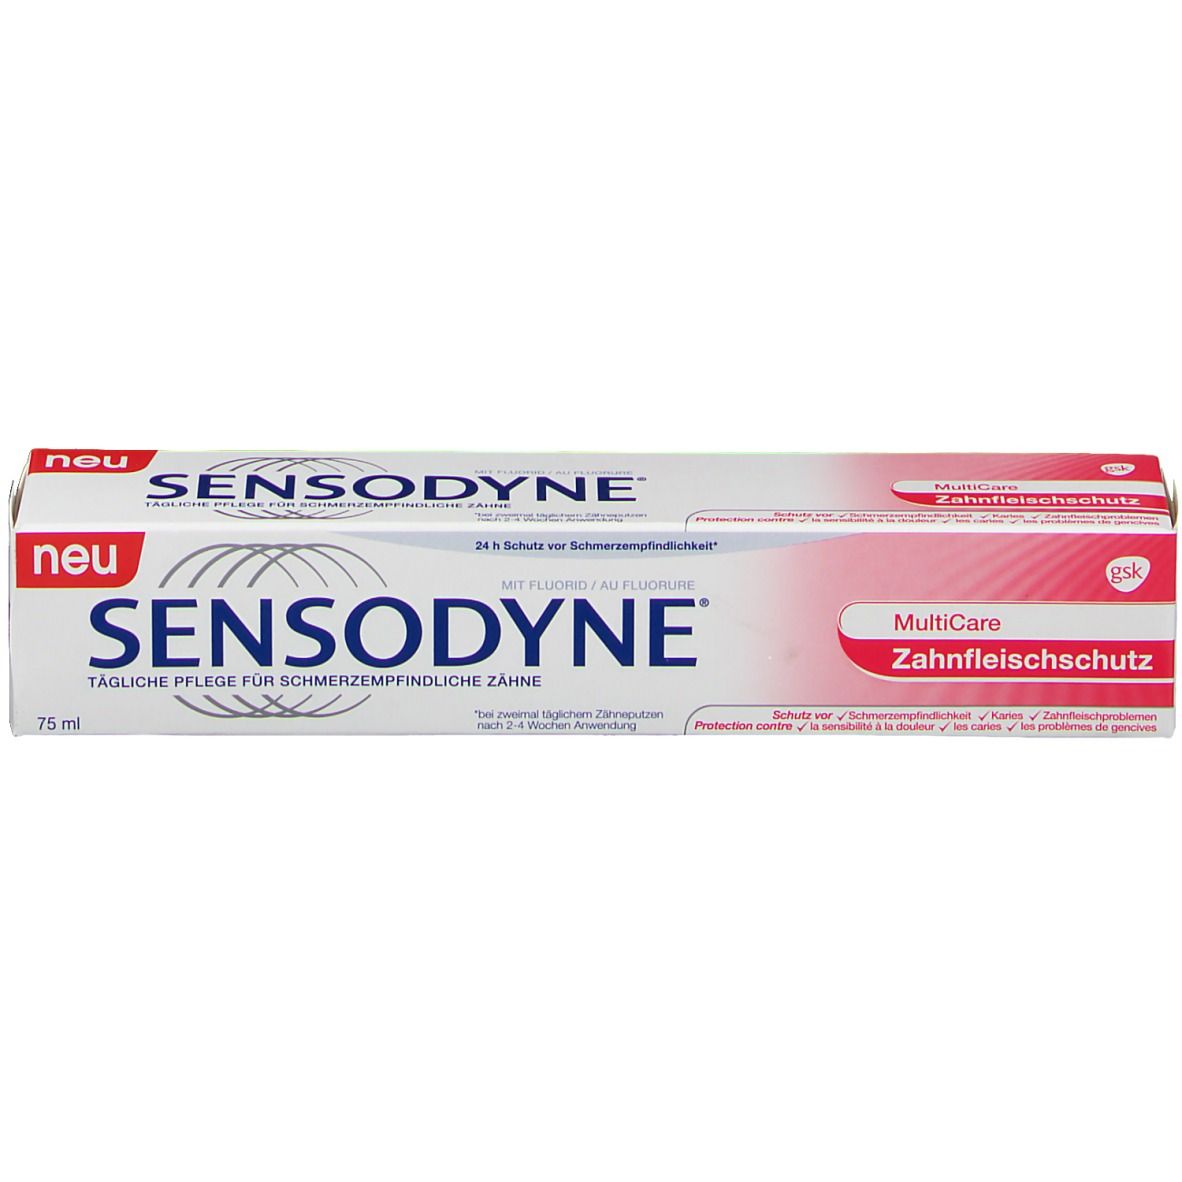 Sensodyne® MultiCare Zahnfleischschutz